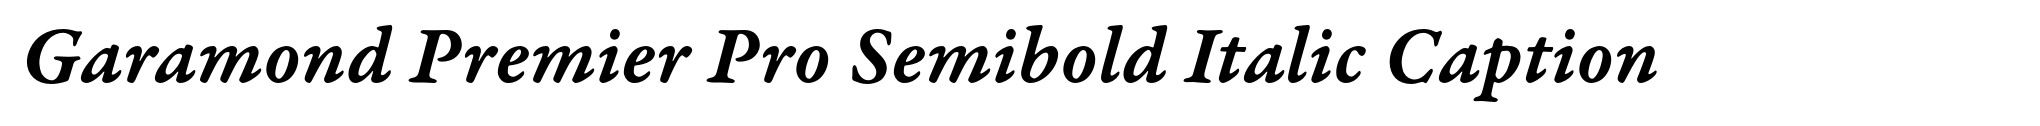 Garamond Premier Pro Semibold Italic Caption image